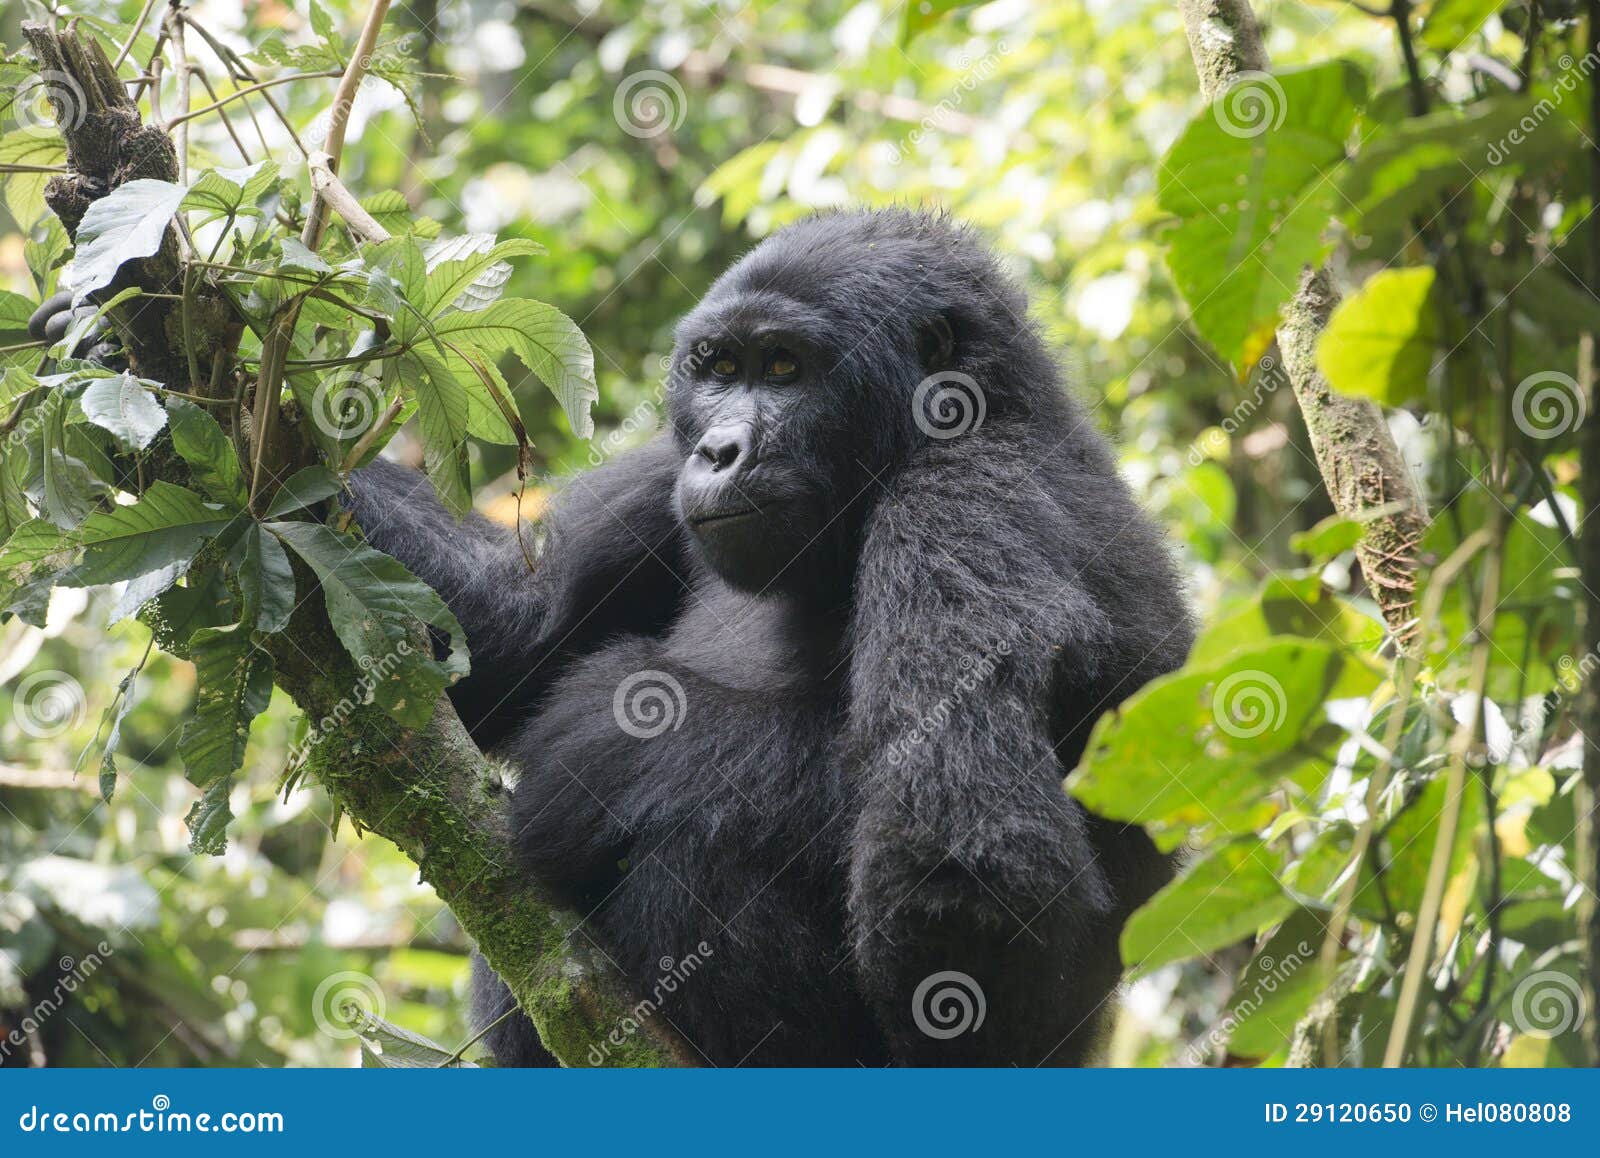 gorilla in jungle of uganda